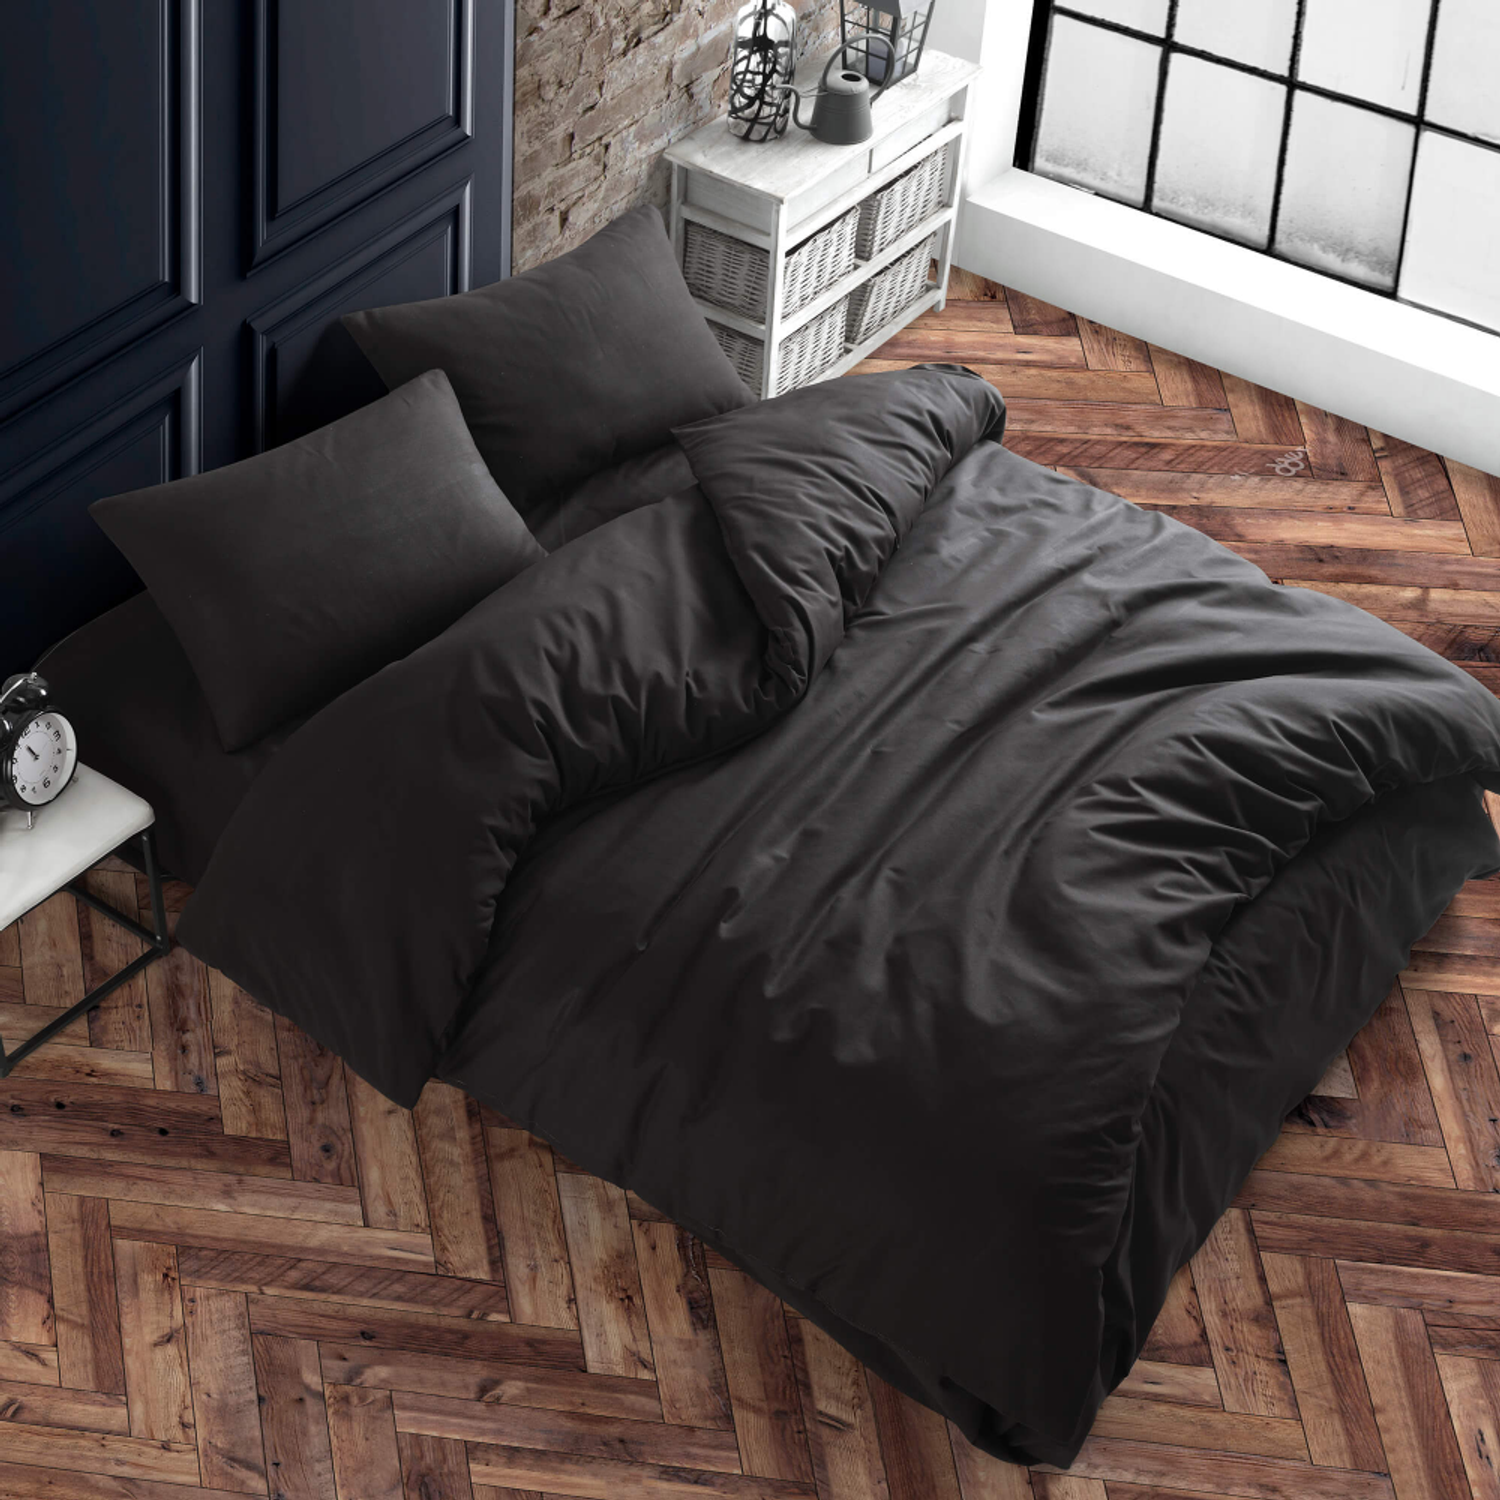 Комплект постельного белья ATLASPLUS размер ЕВРО ранфорс хлопок цвет черный - фото 1